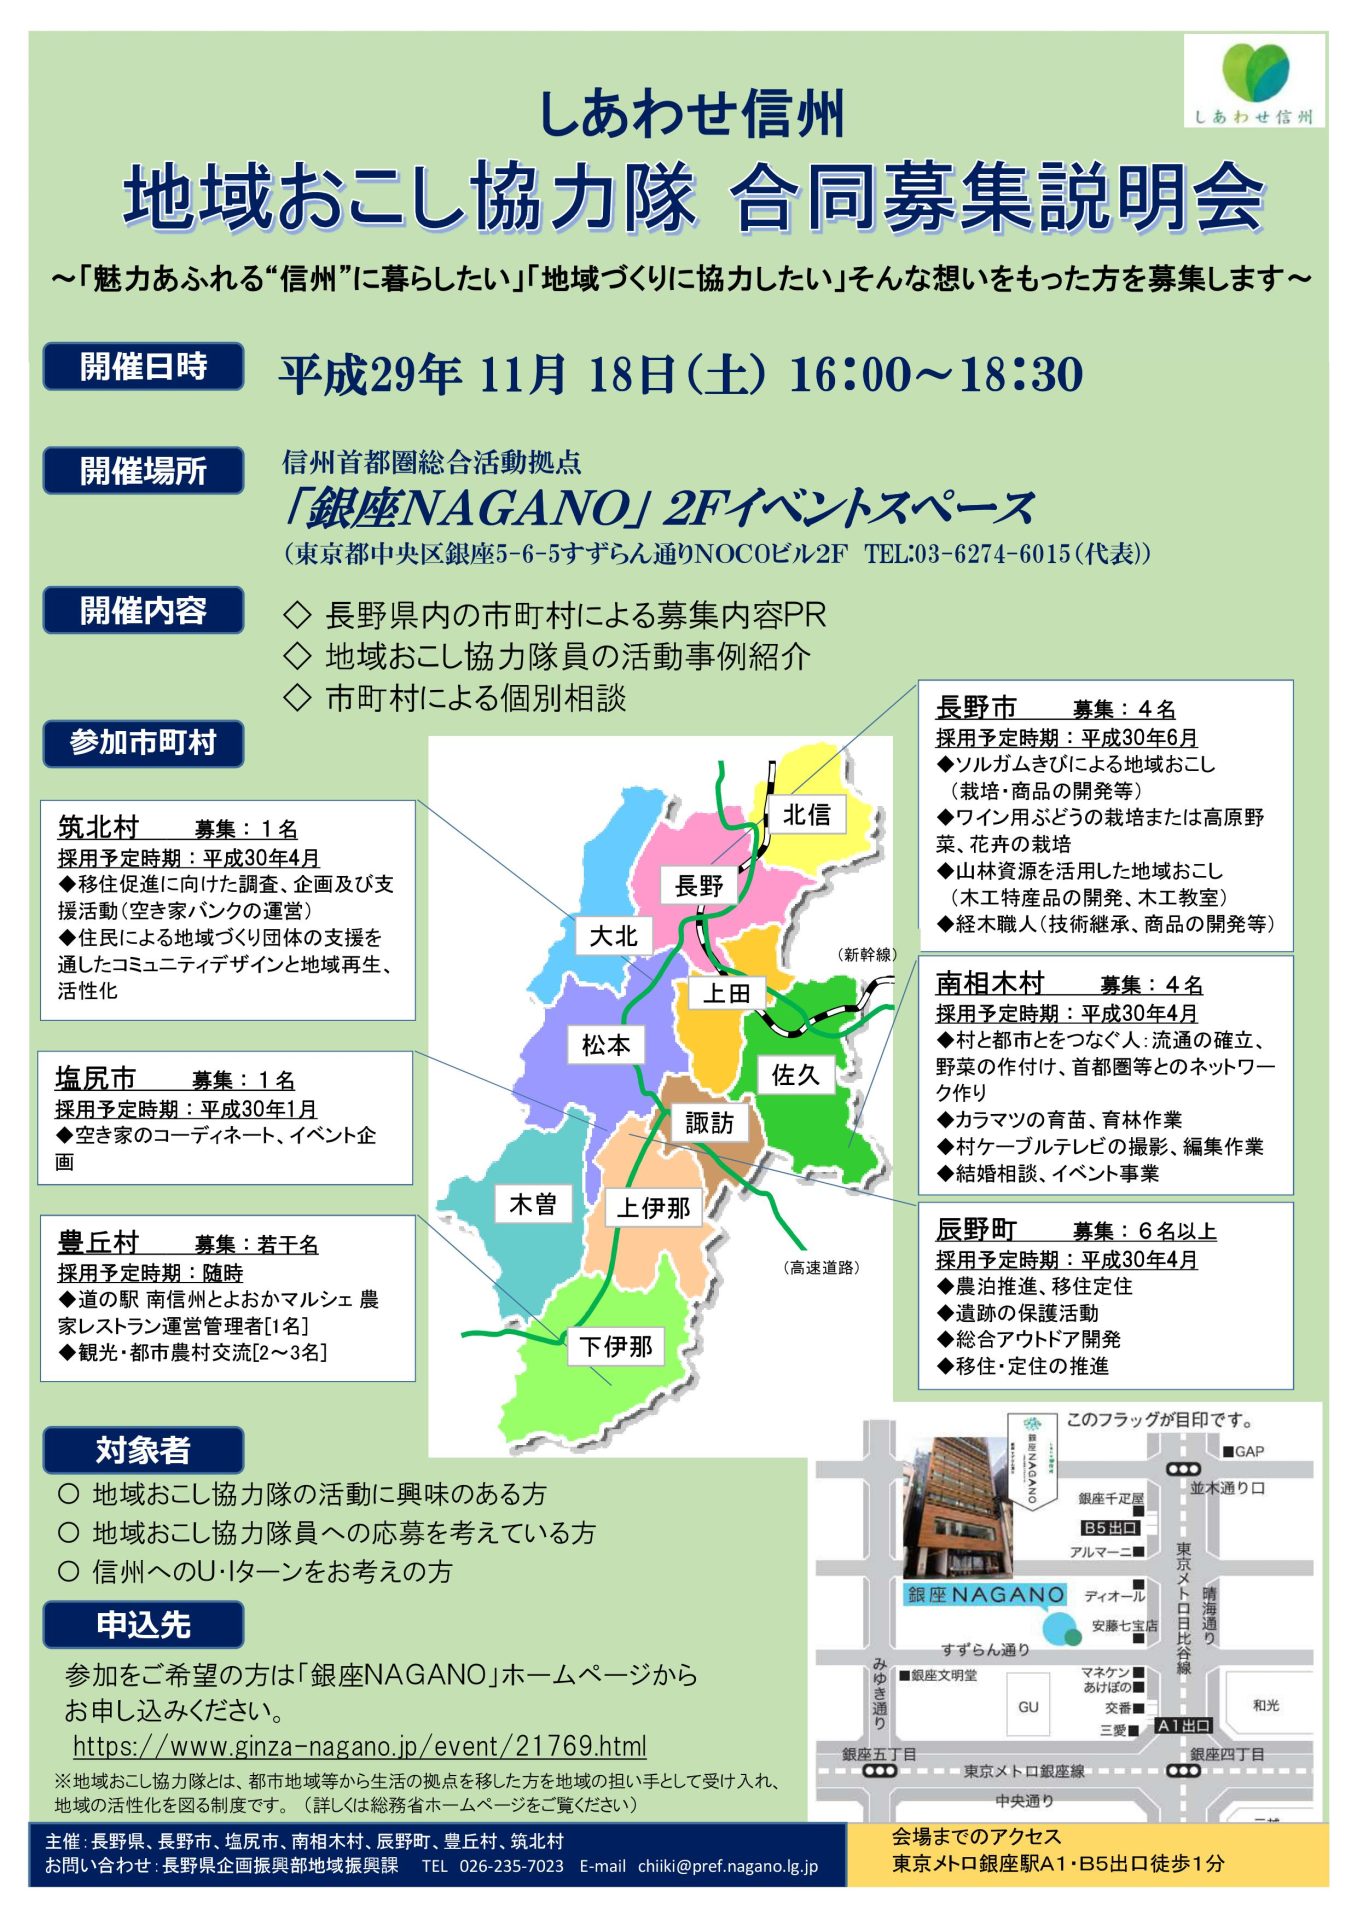 長野県地域おこし協力隊合同募集説明会 | 移住関連イベント情報